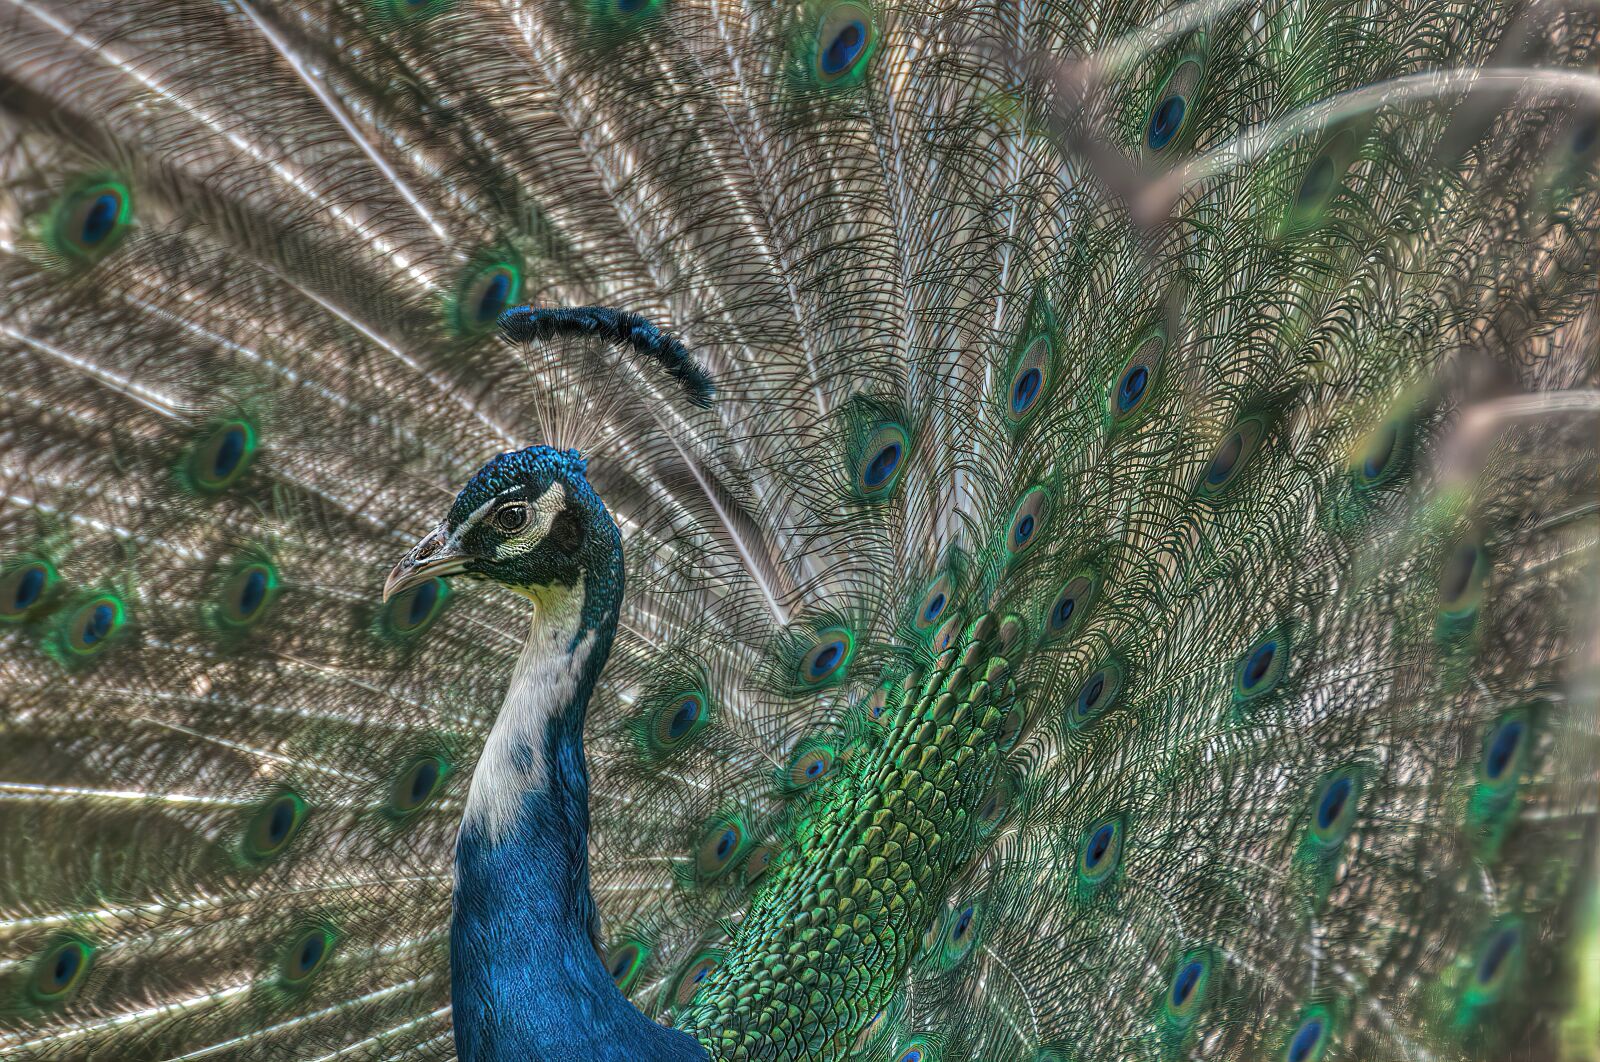 Nikon D90 sample photo. Peacock, bird, nature photography